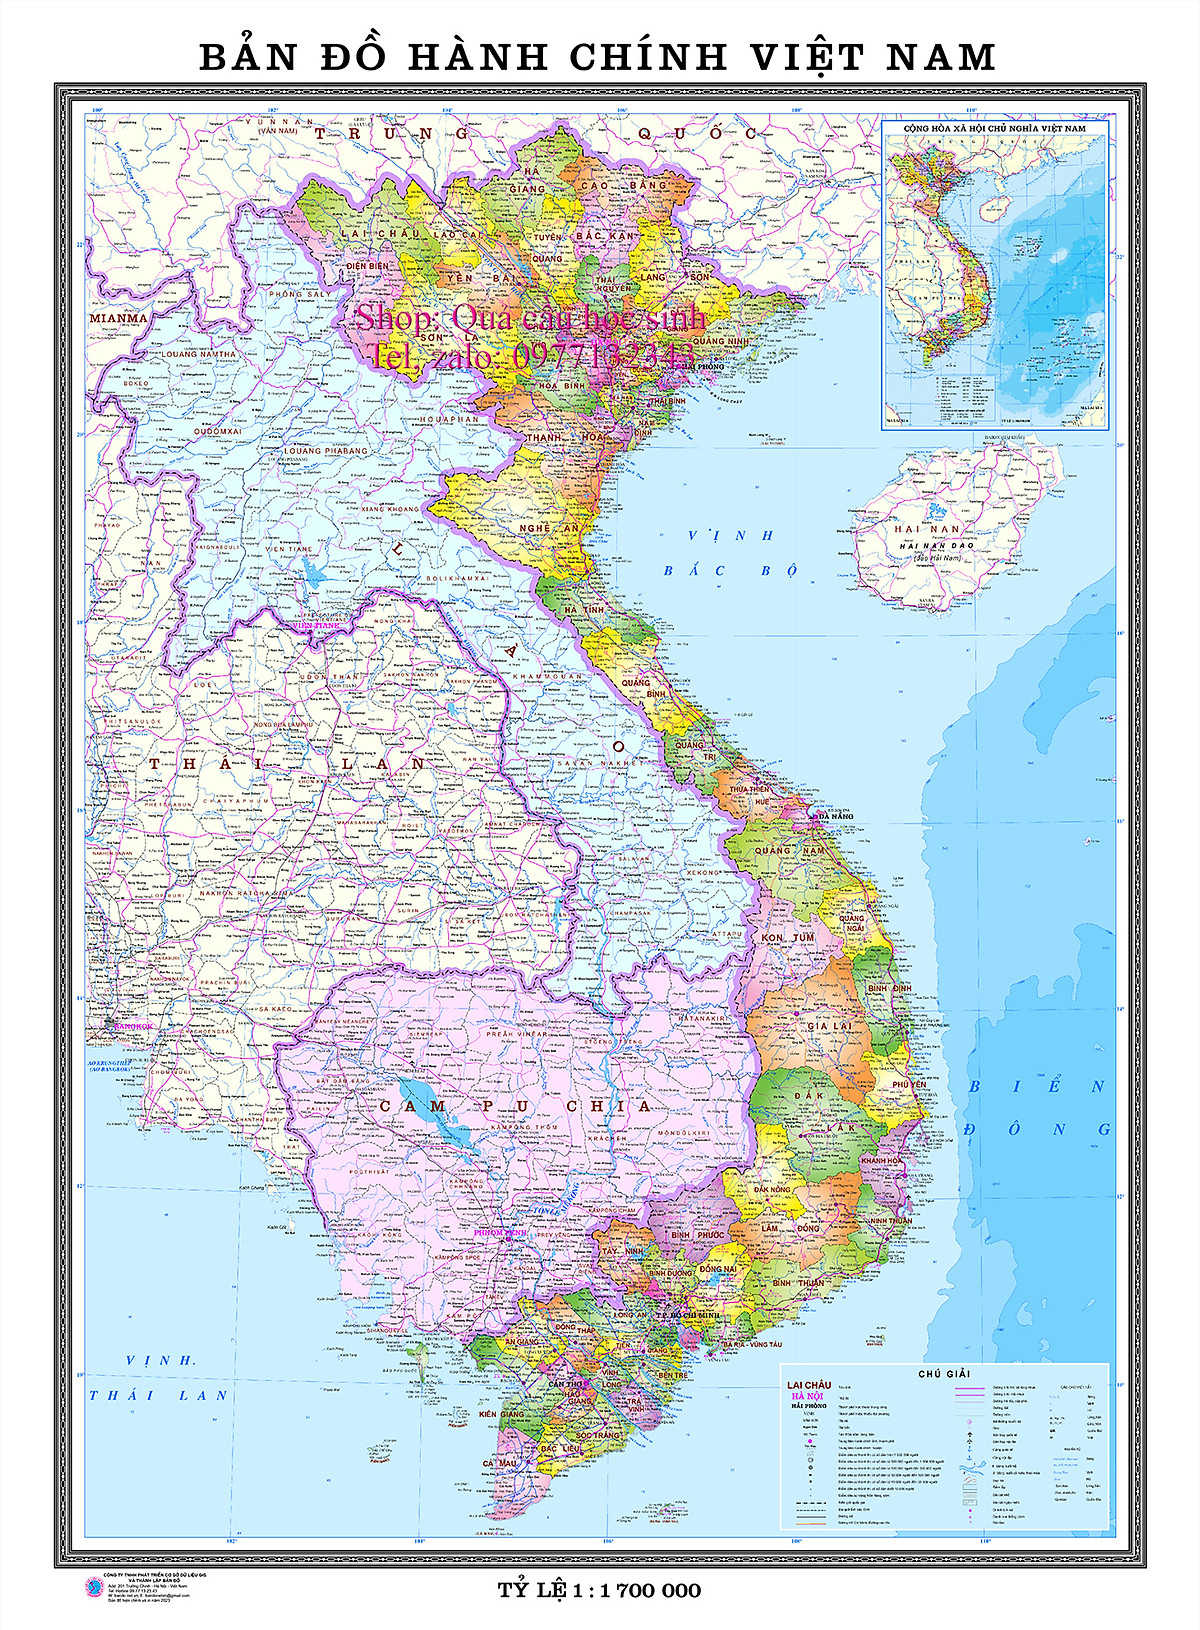 Một bản đồ hành chính khổ lớn với dữ liệu mới nhất đã được phát hành trong năm 2024, cung cấp cho bạn thông tin chi tiết và chính xác nhất về các khu vực và tỉnh thành của đất nước. Đó là một công cụ hữu ích cho các chuyên gia địa lý và những người quan tâm đến địa lý hành chính của Việt Nam.